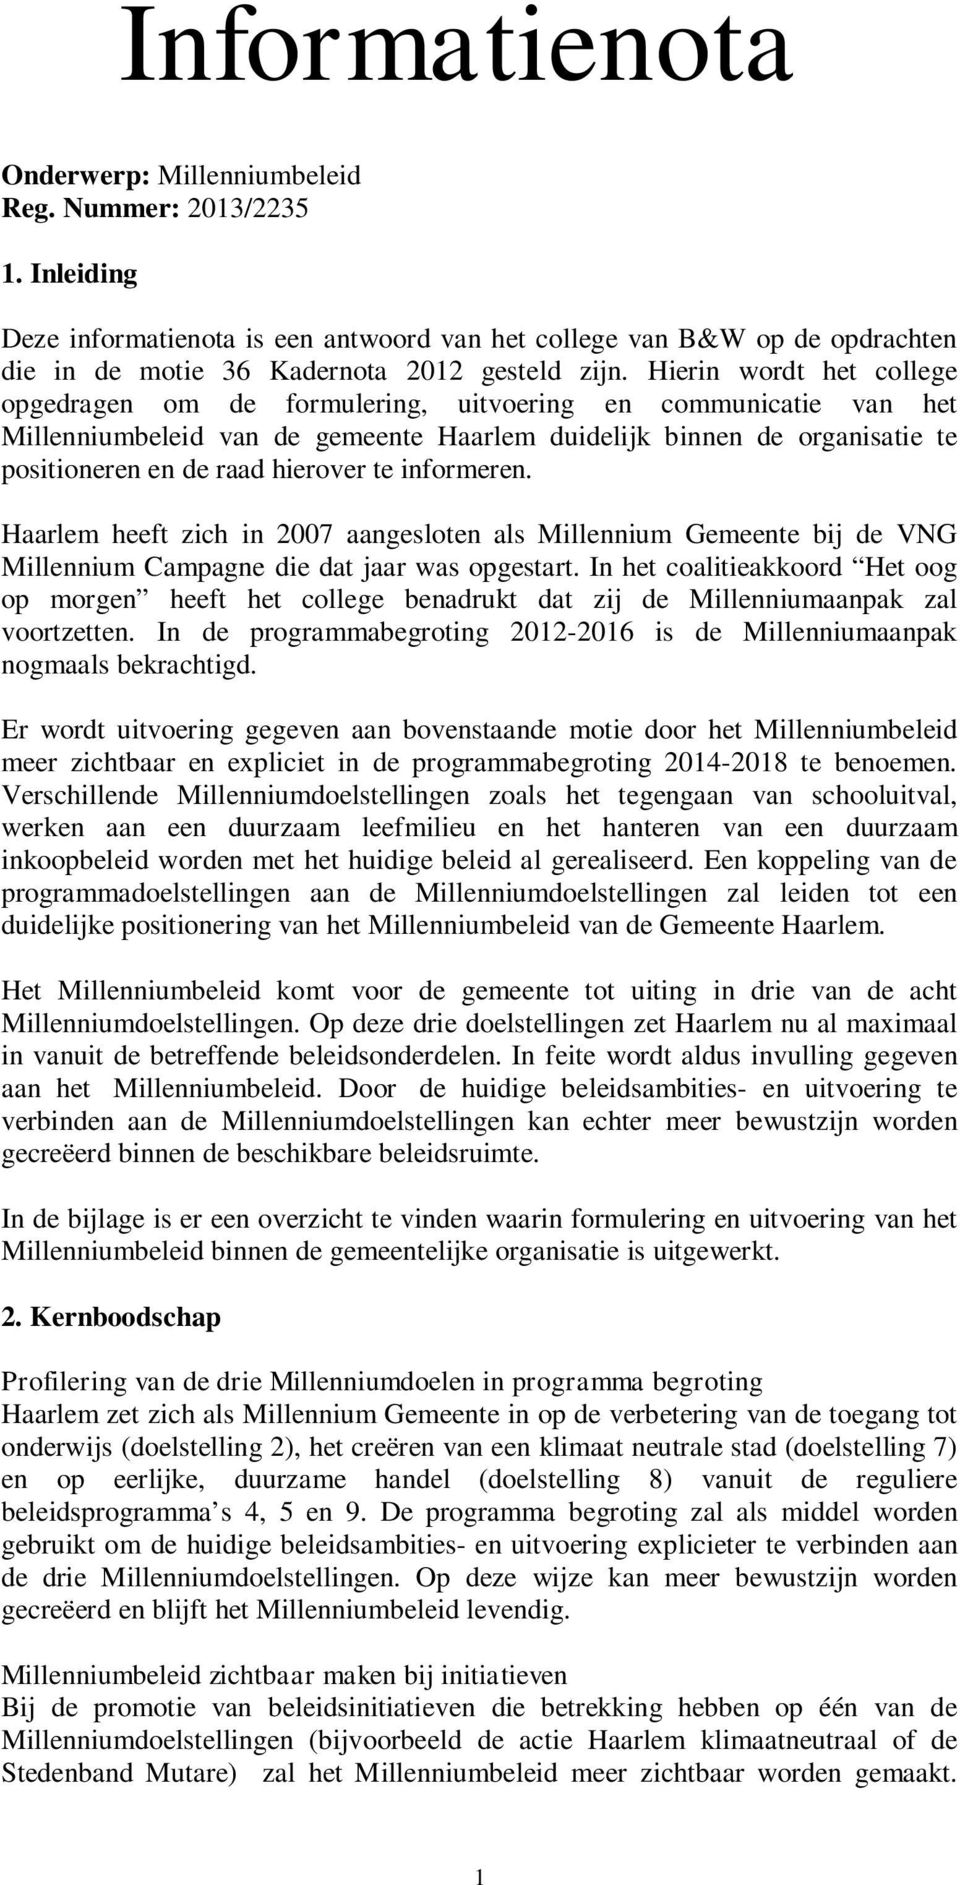 Hierin wordt het college opgedragen om de formulering, uitvoering en communicatie van het Millenniumbeleid van de gemeente Haarlem duidelijk binnen de organisatie te positioneren en de raad hierover